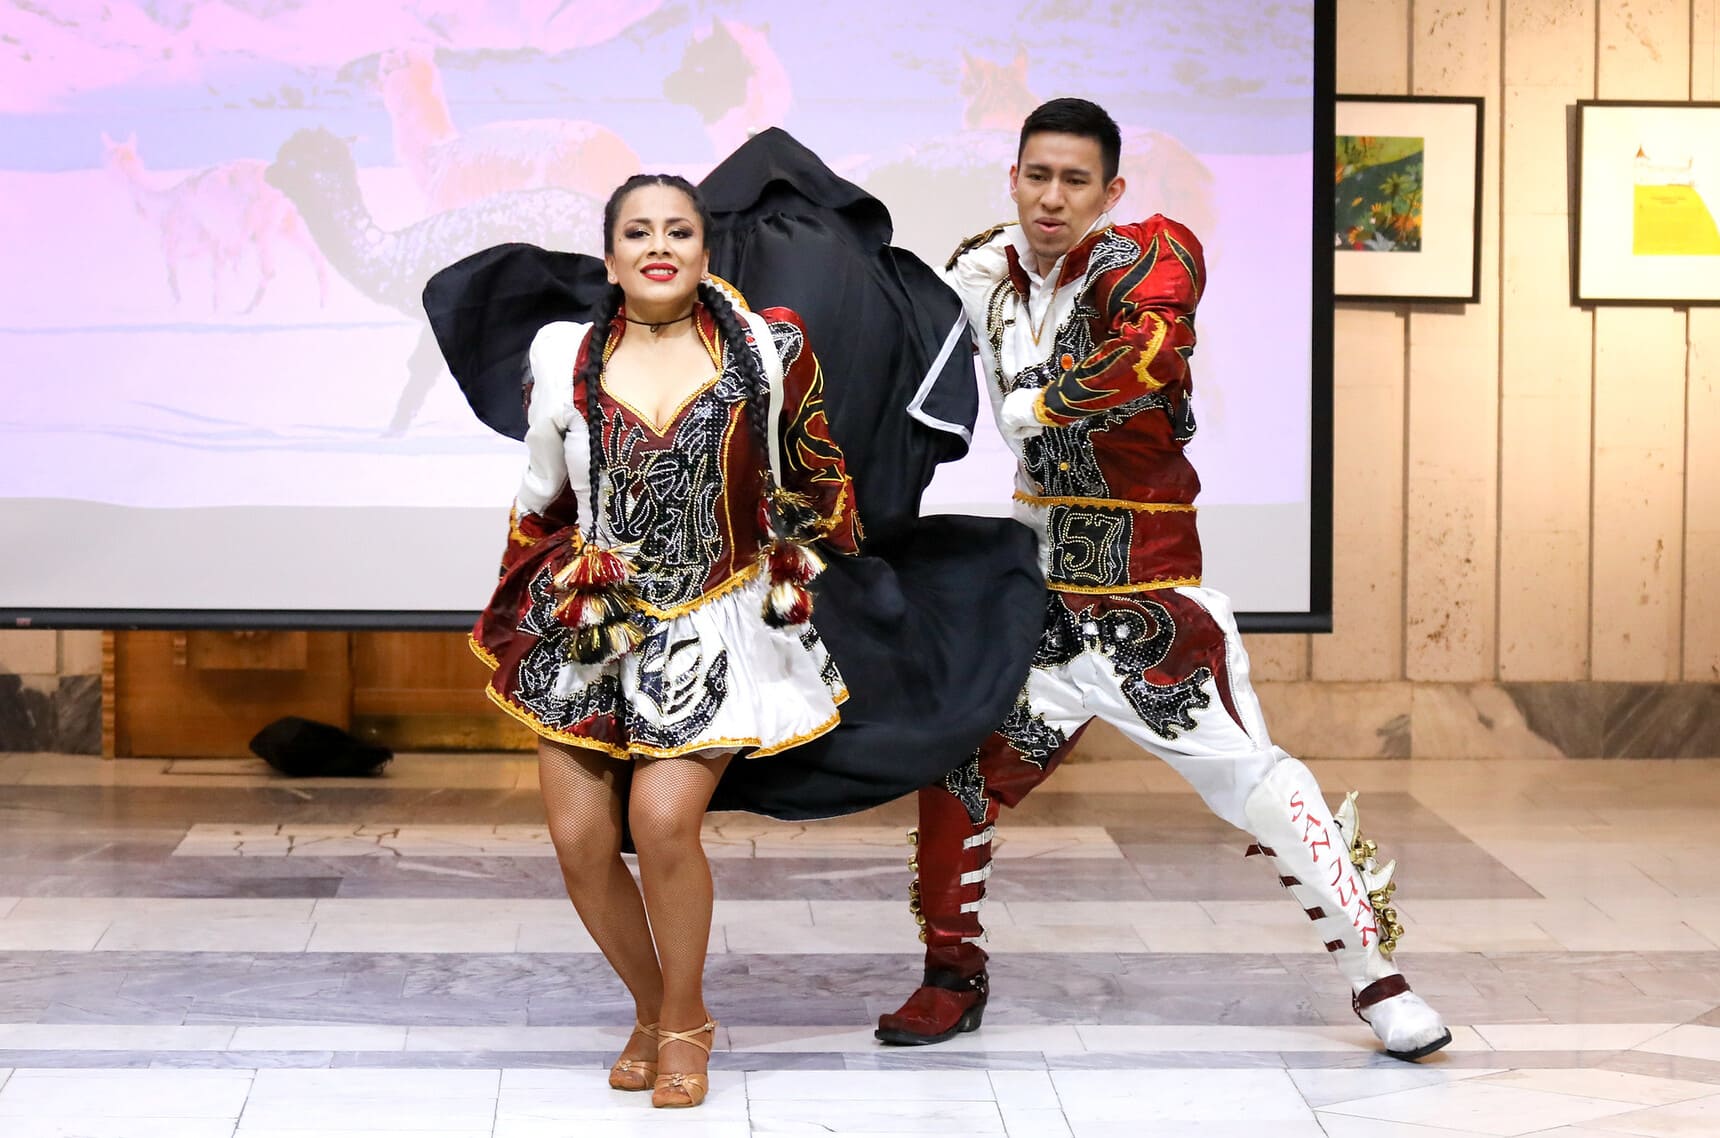 Открывая страны: Перу. Танец «Капоралес»